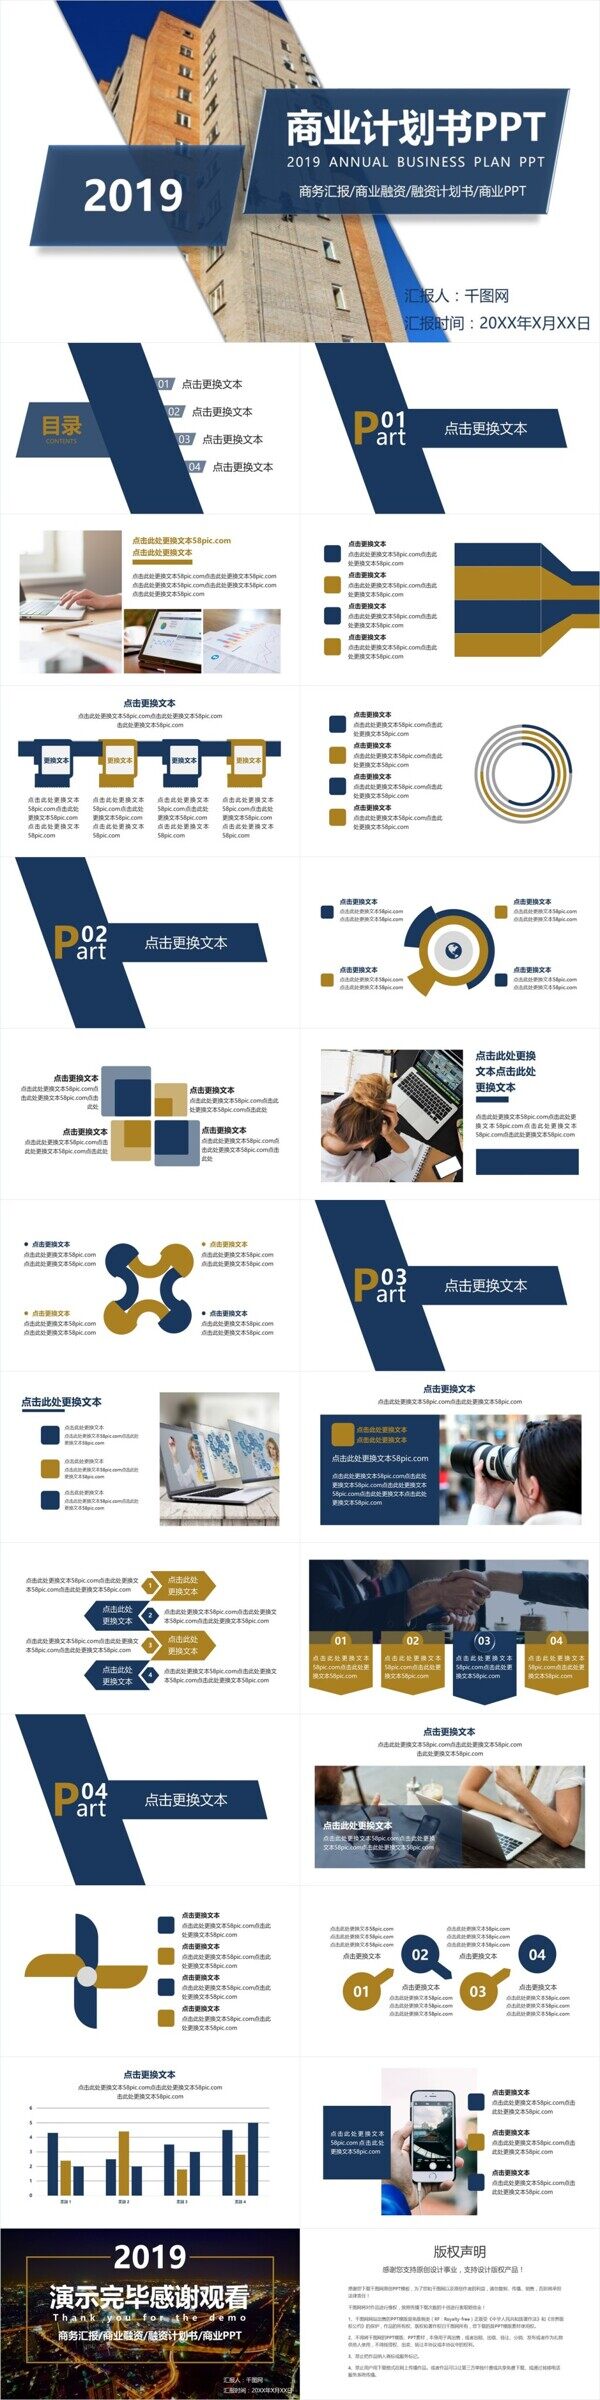 蓝黄系列商业计划书PPT模板下载